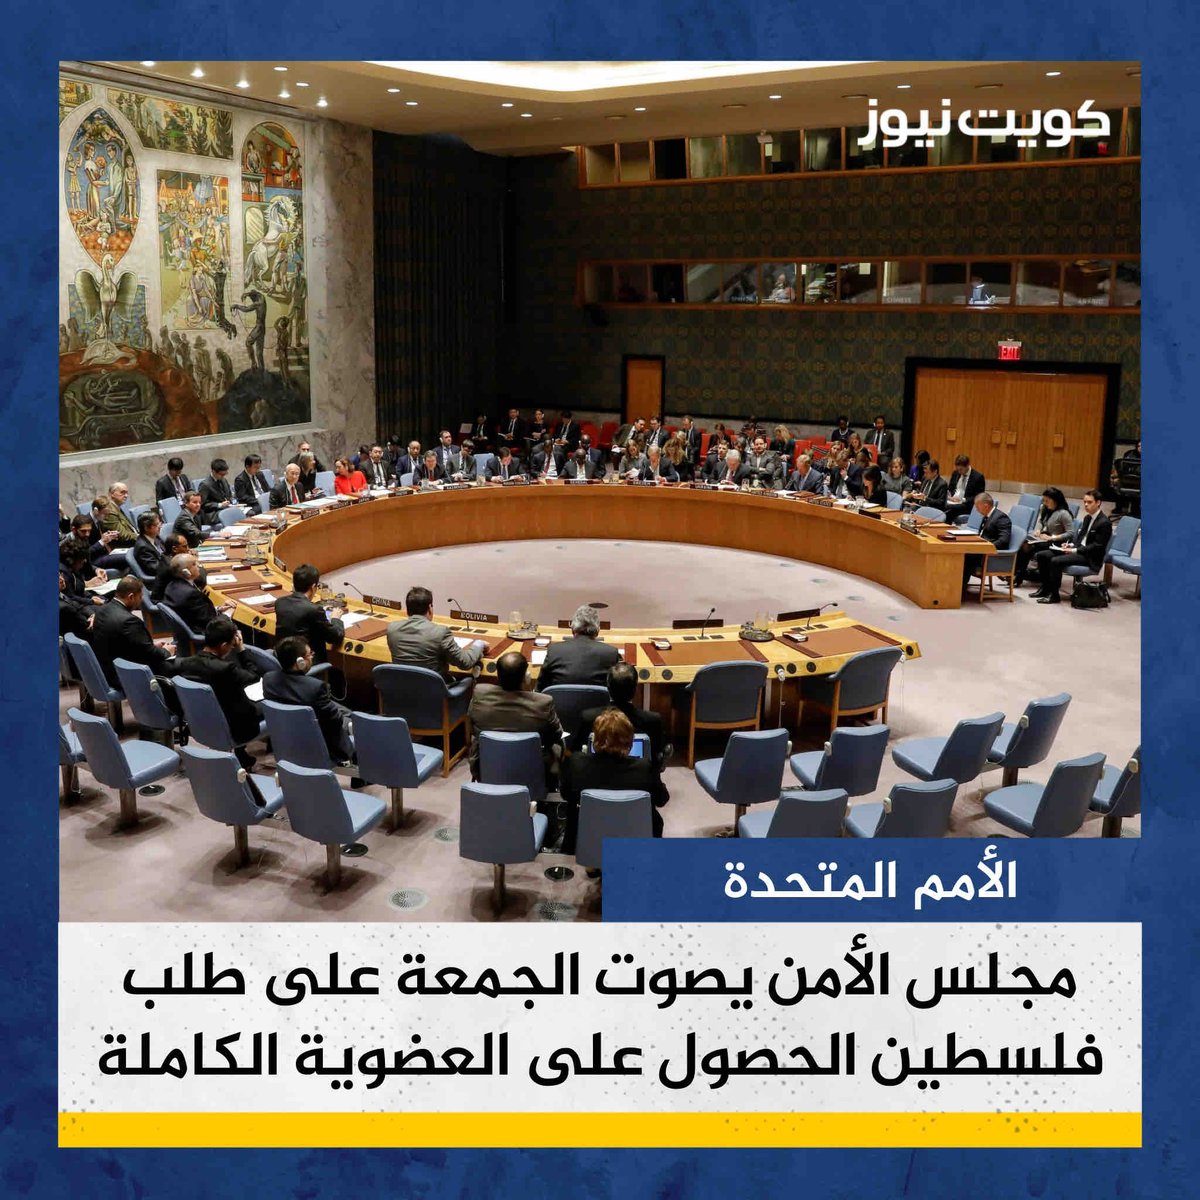 مجلس الأمن يصوت الجمعة 19 أبريل على طلب فلسطين الحصول على العضوية الكاملة بالأمم المتحدة